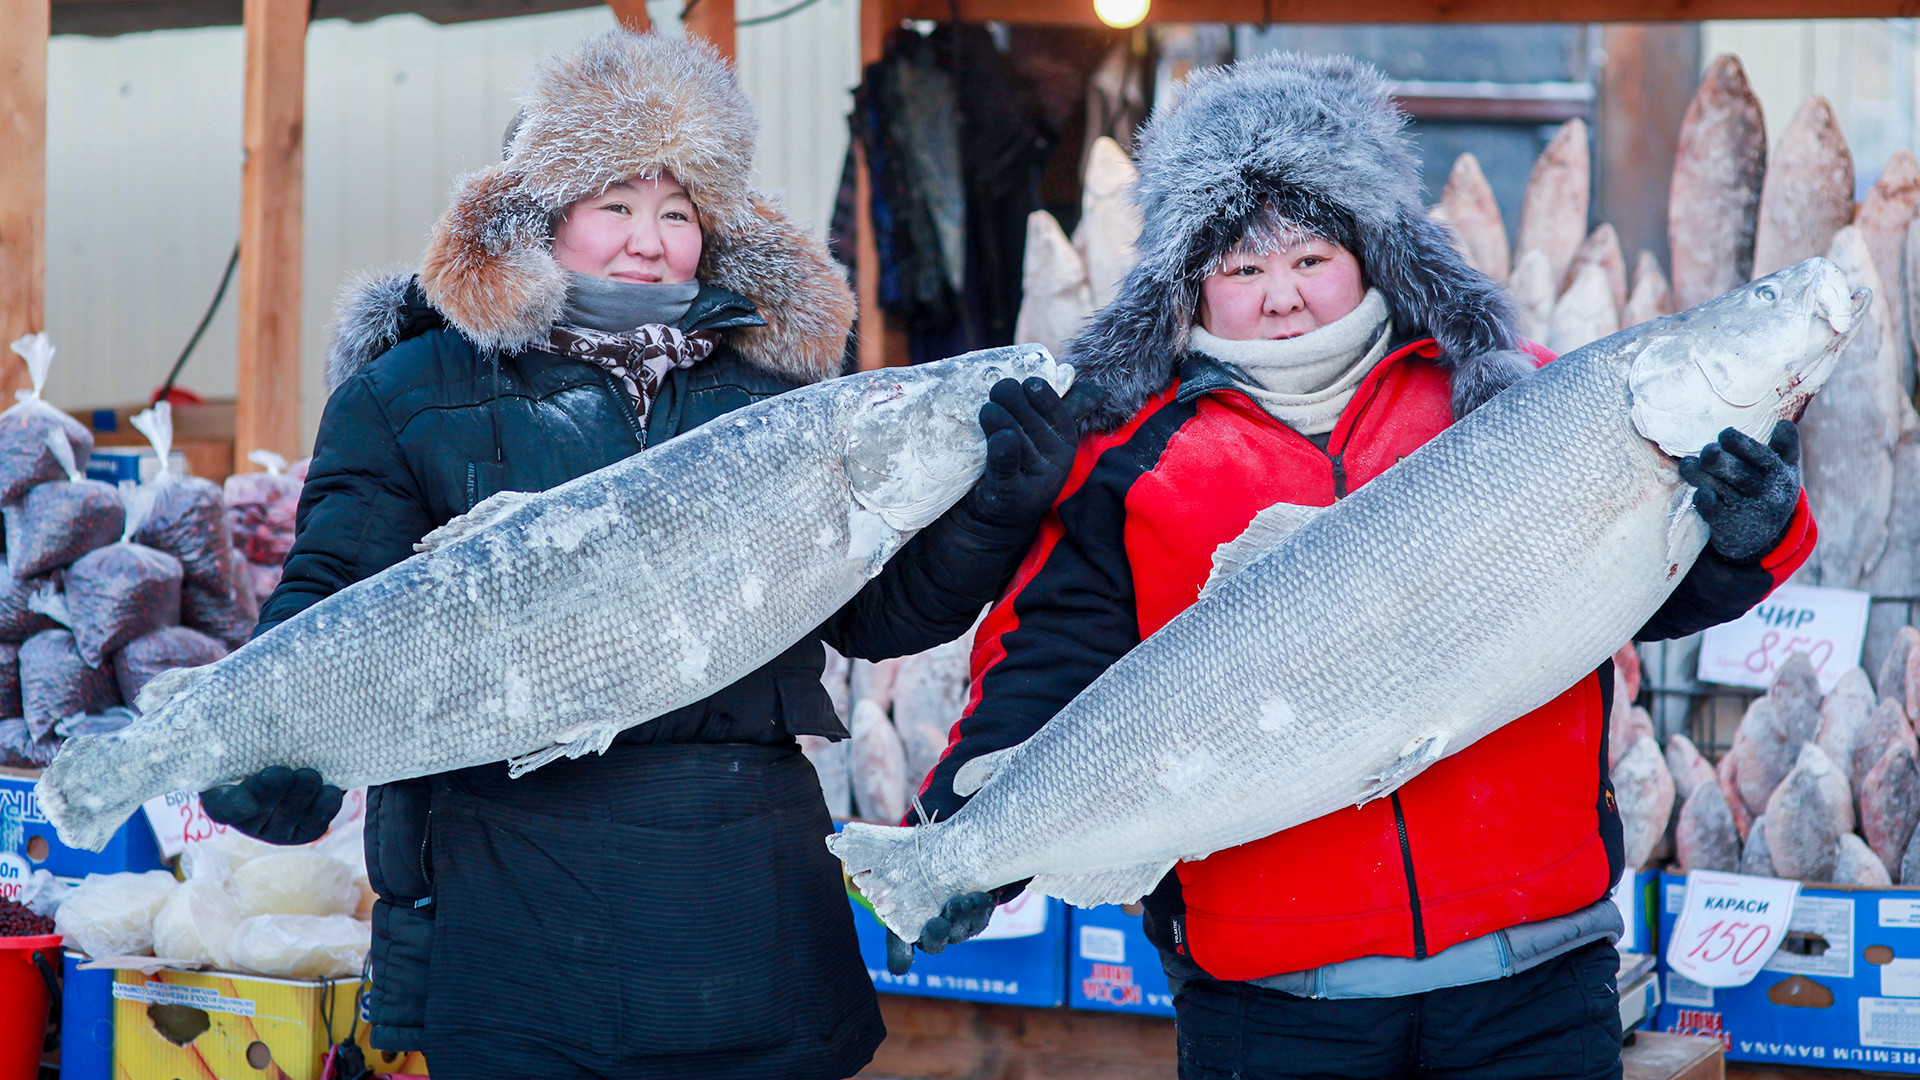 Продавци рибе на Крестјанској пијаци, на -30 степени Целзијуса. Просечна температура у Јакутску је у јануару око -40 степени.